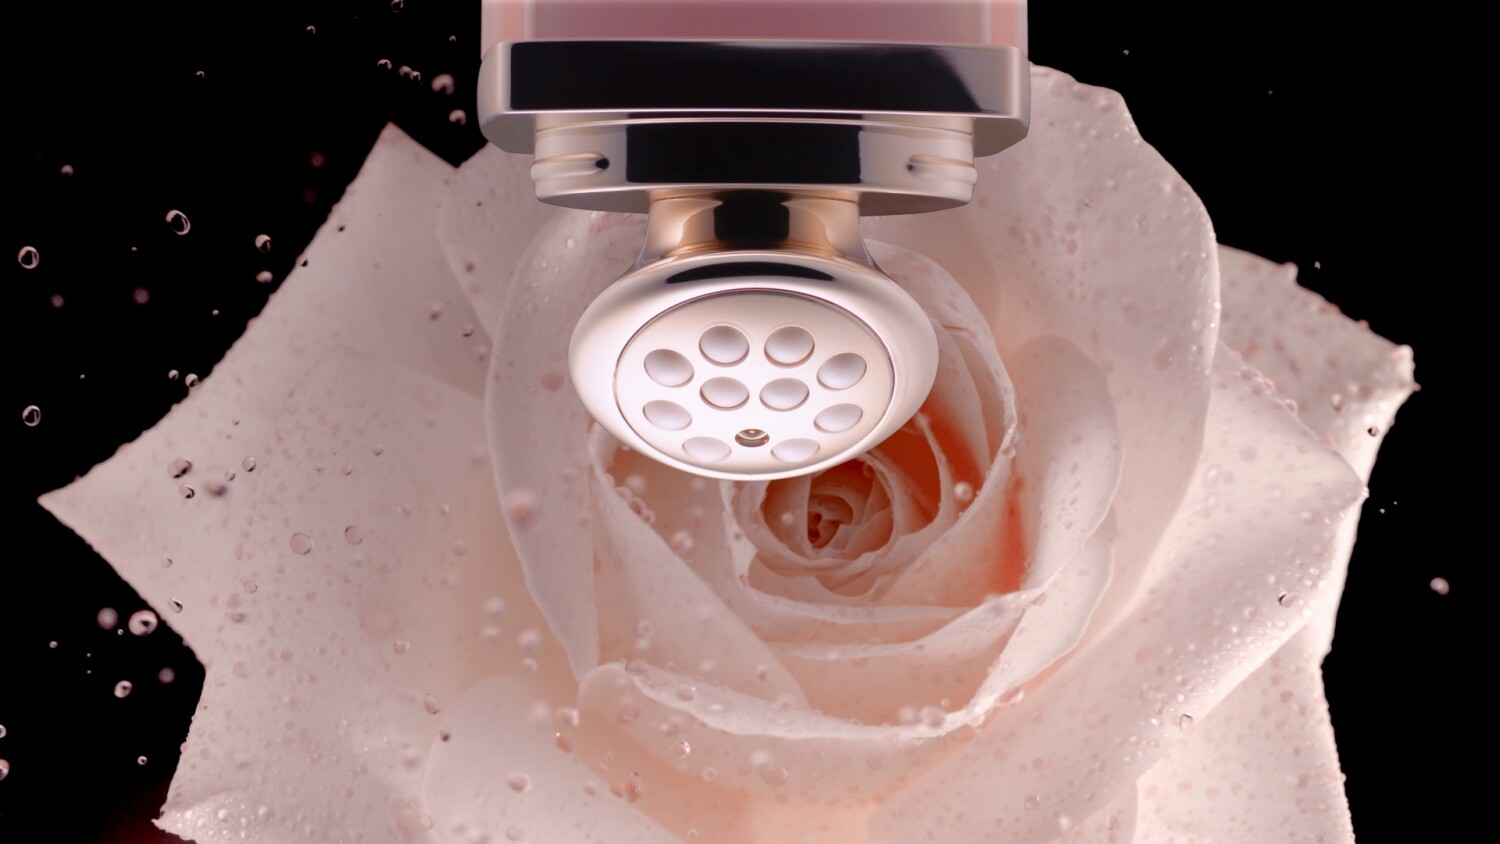 玫瑰花蜜活養精華眼霜擁有專利設計的獨特按摩棒，配合Dior Institut亮肌美妍